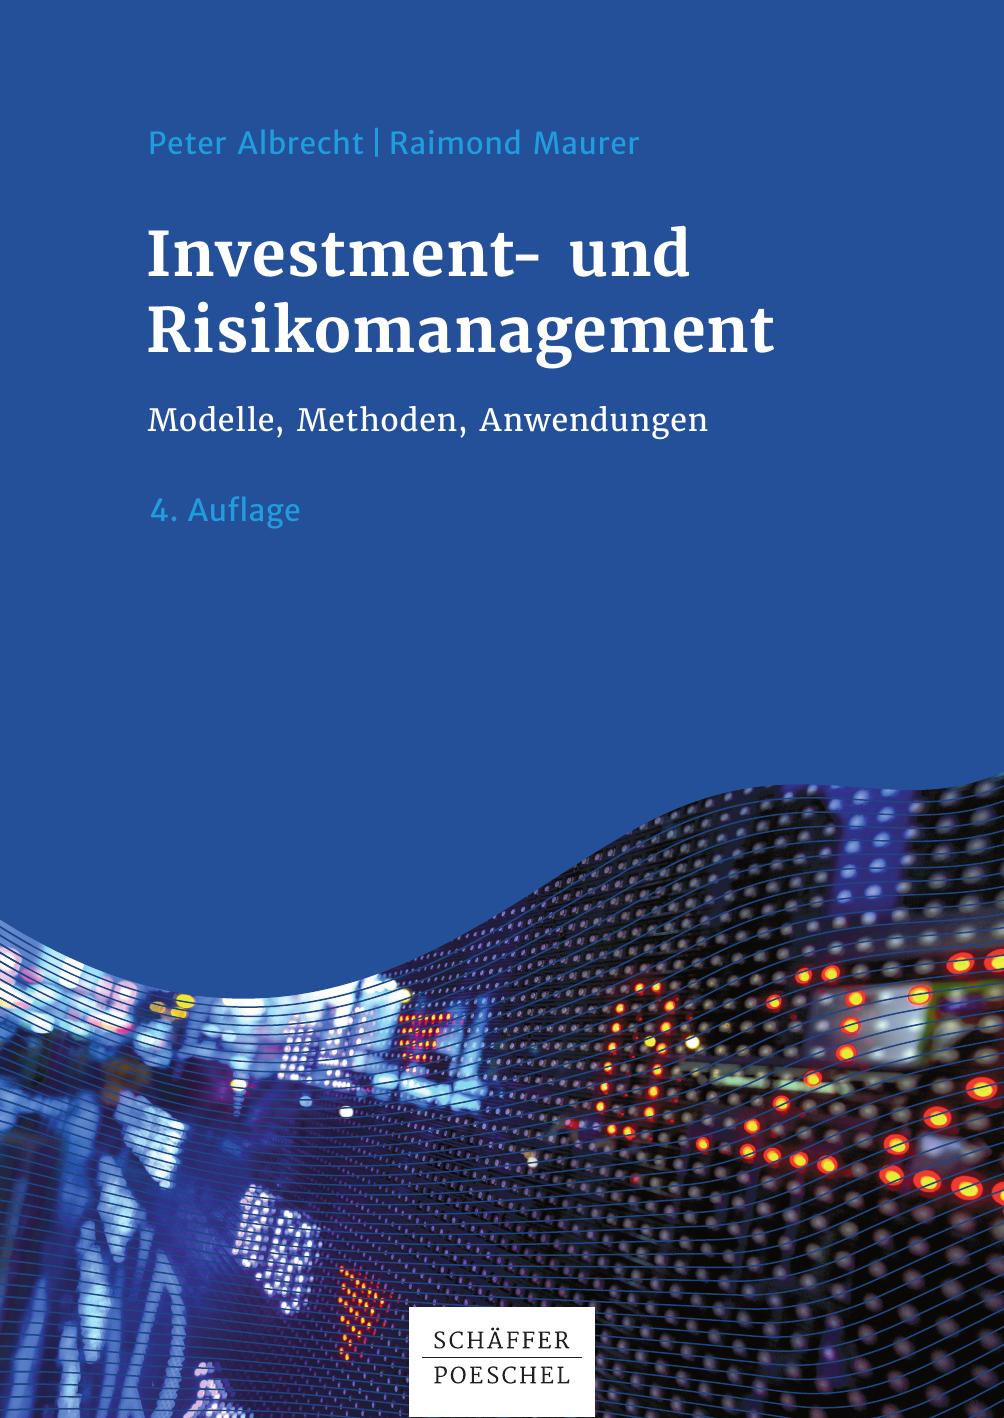 Investment- und Risikomanagement: Modelle, Methoden, Anwendungen